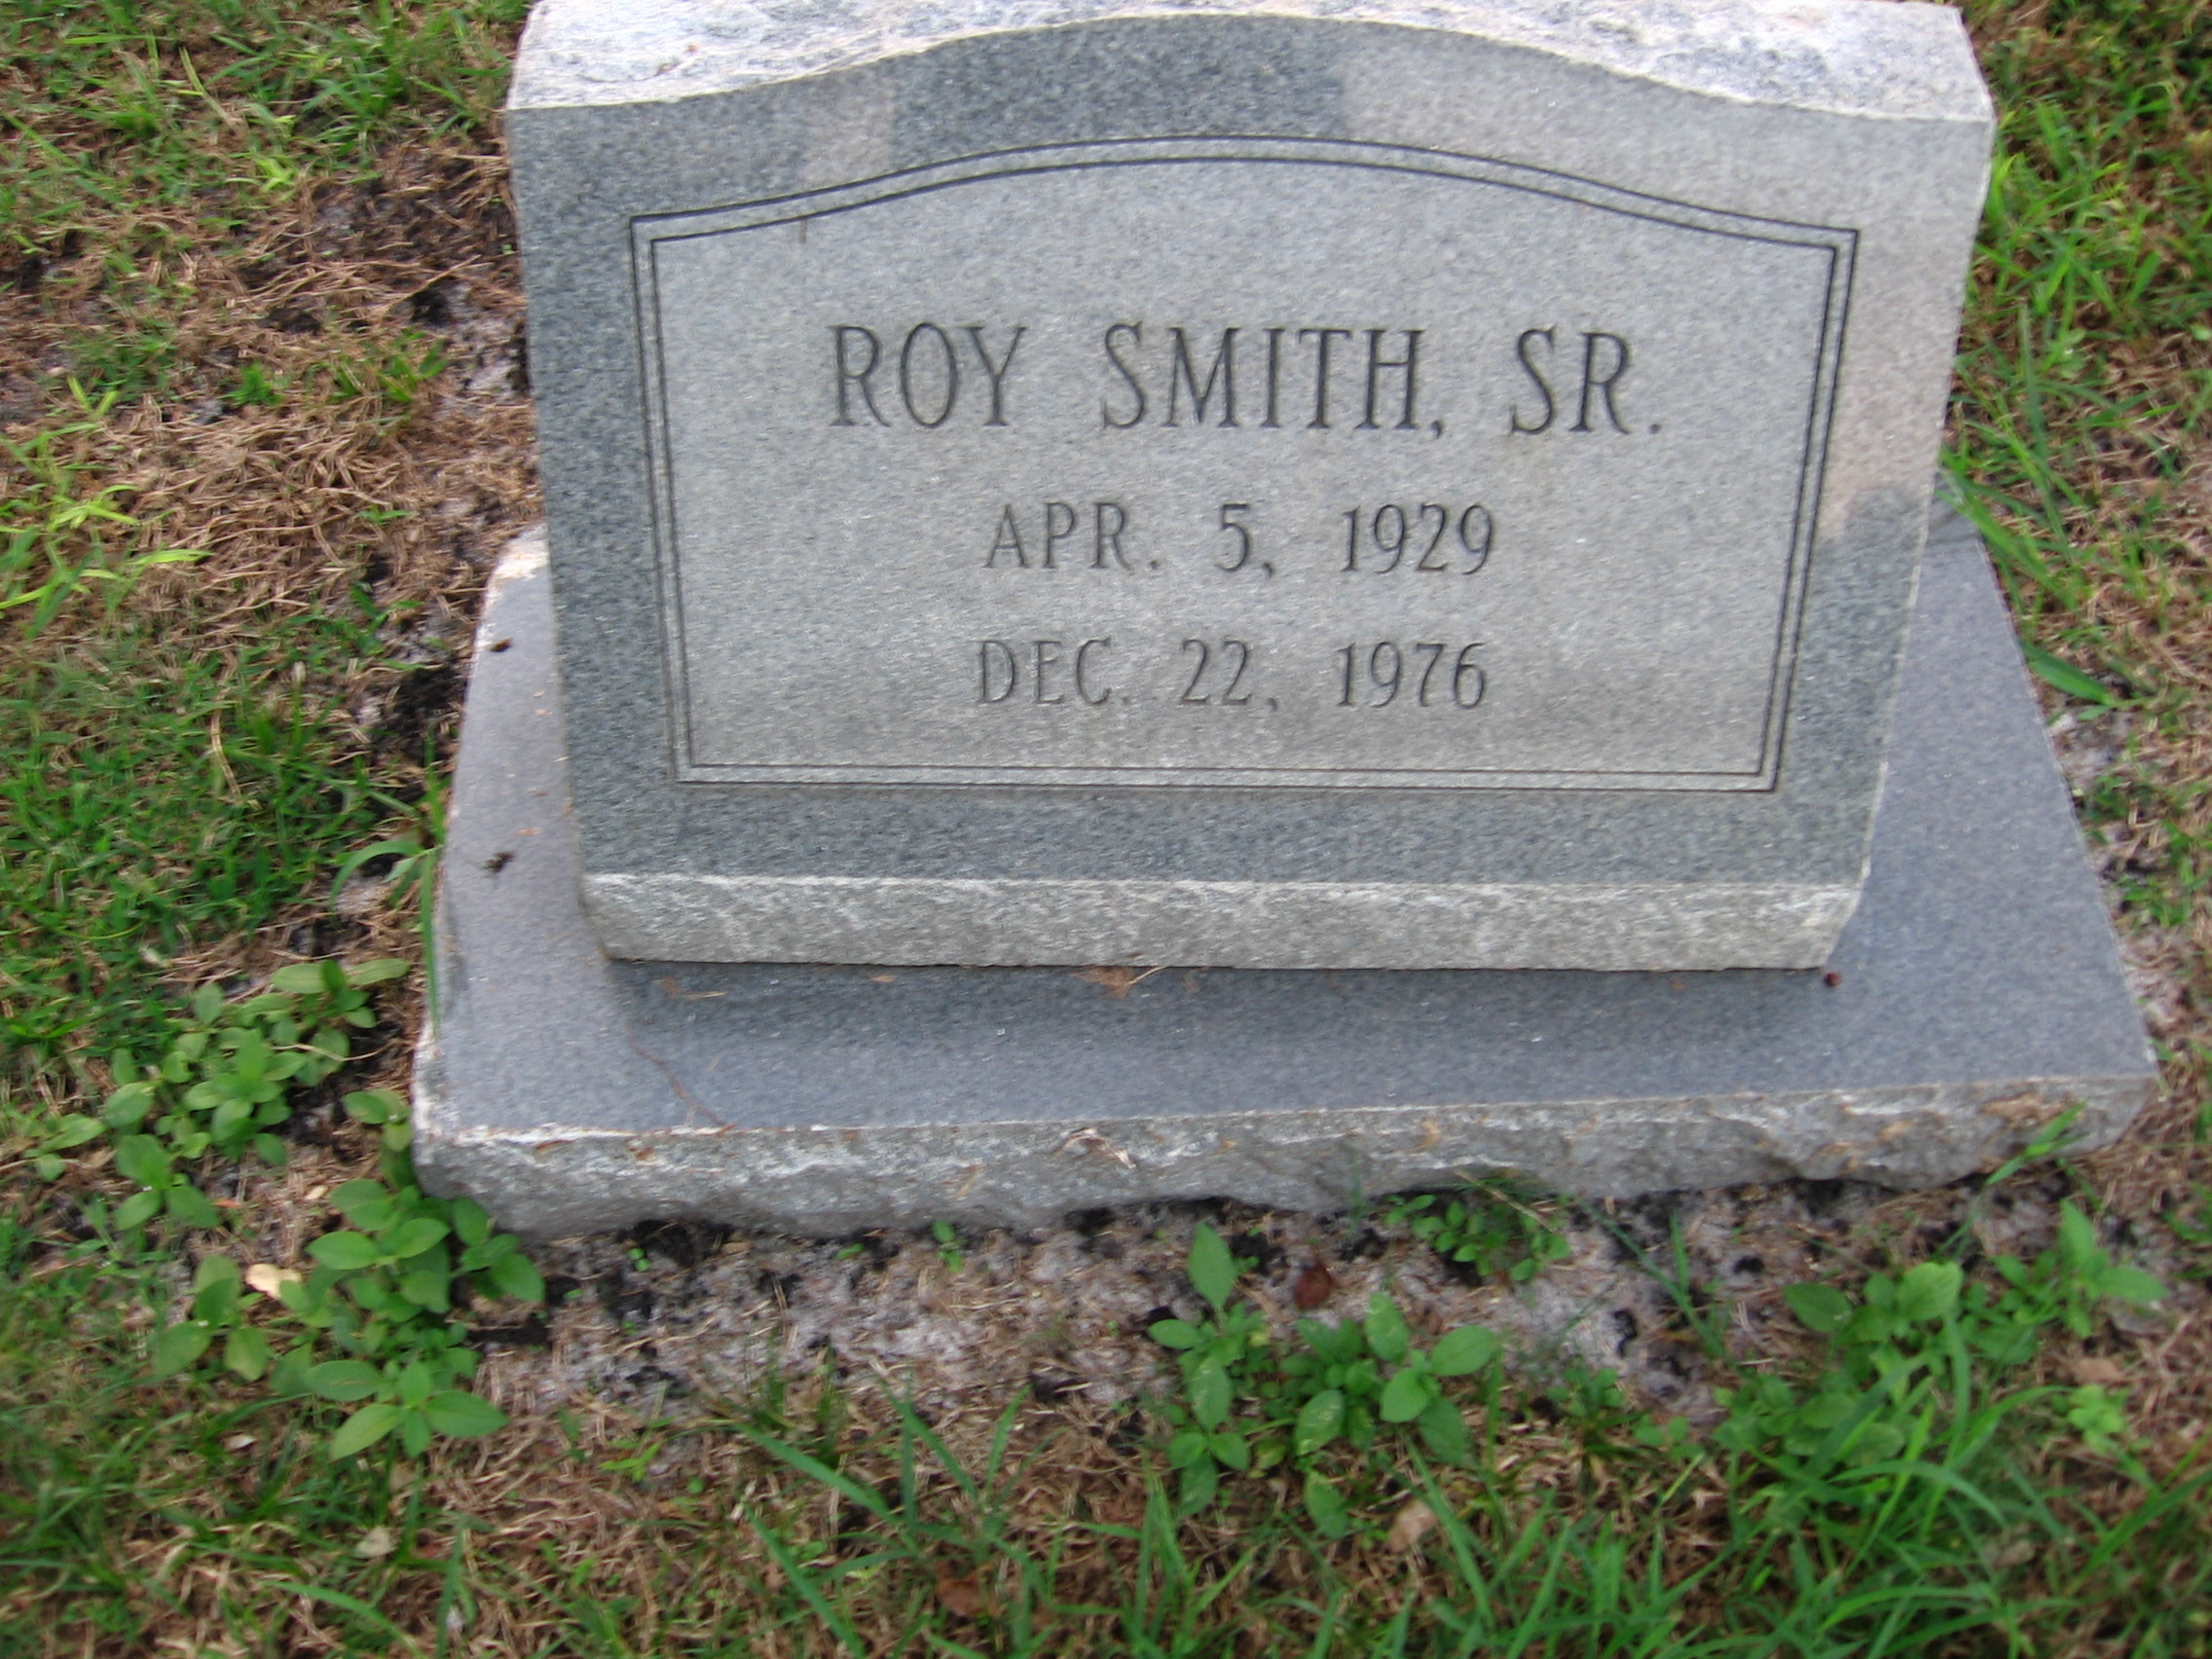 Roy Smith, Sr